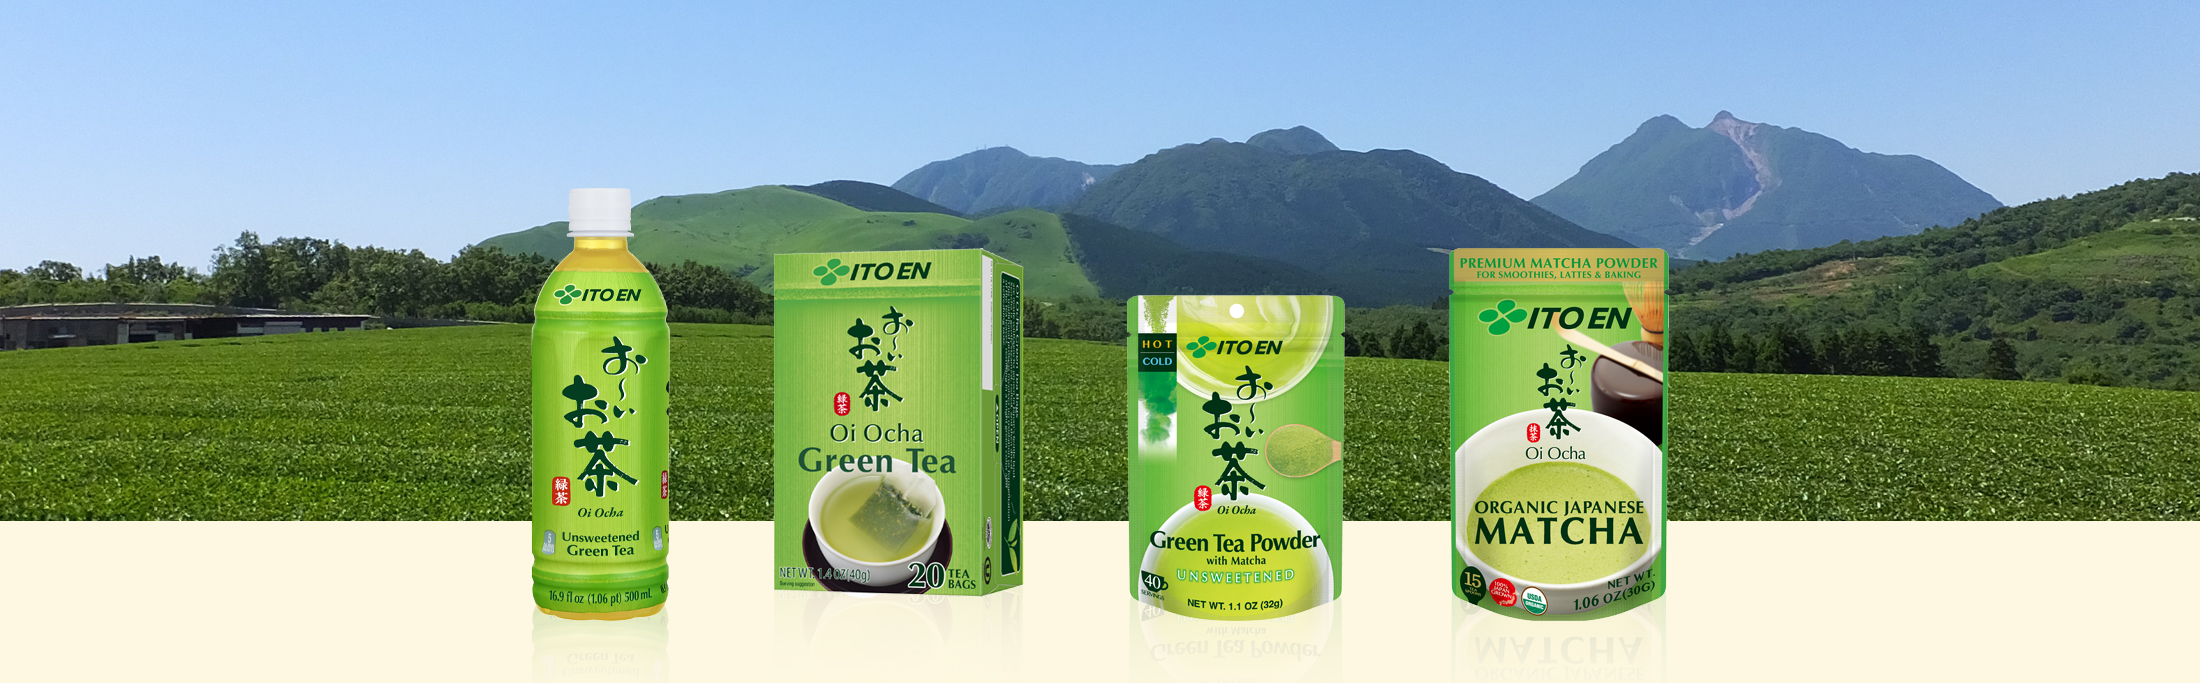 ITO EN's Green Tea Brand